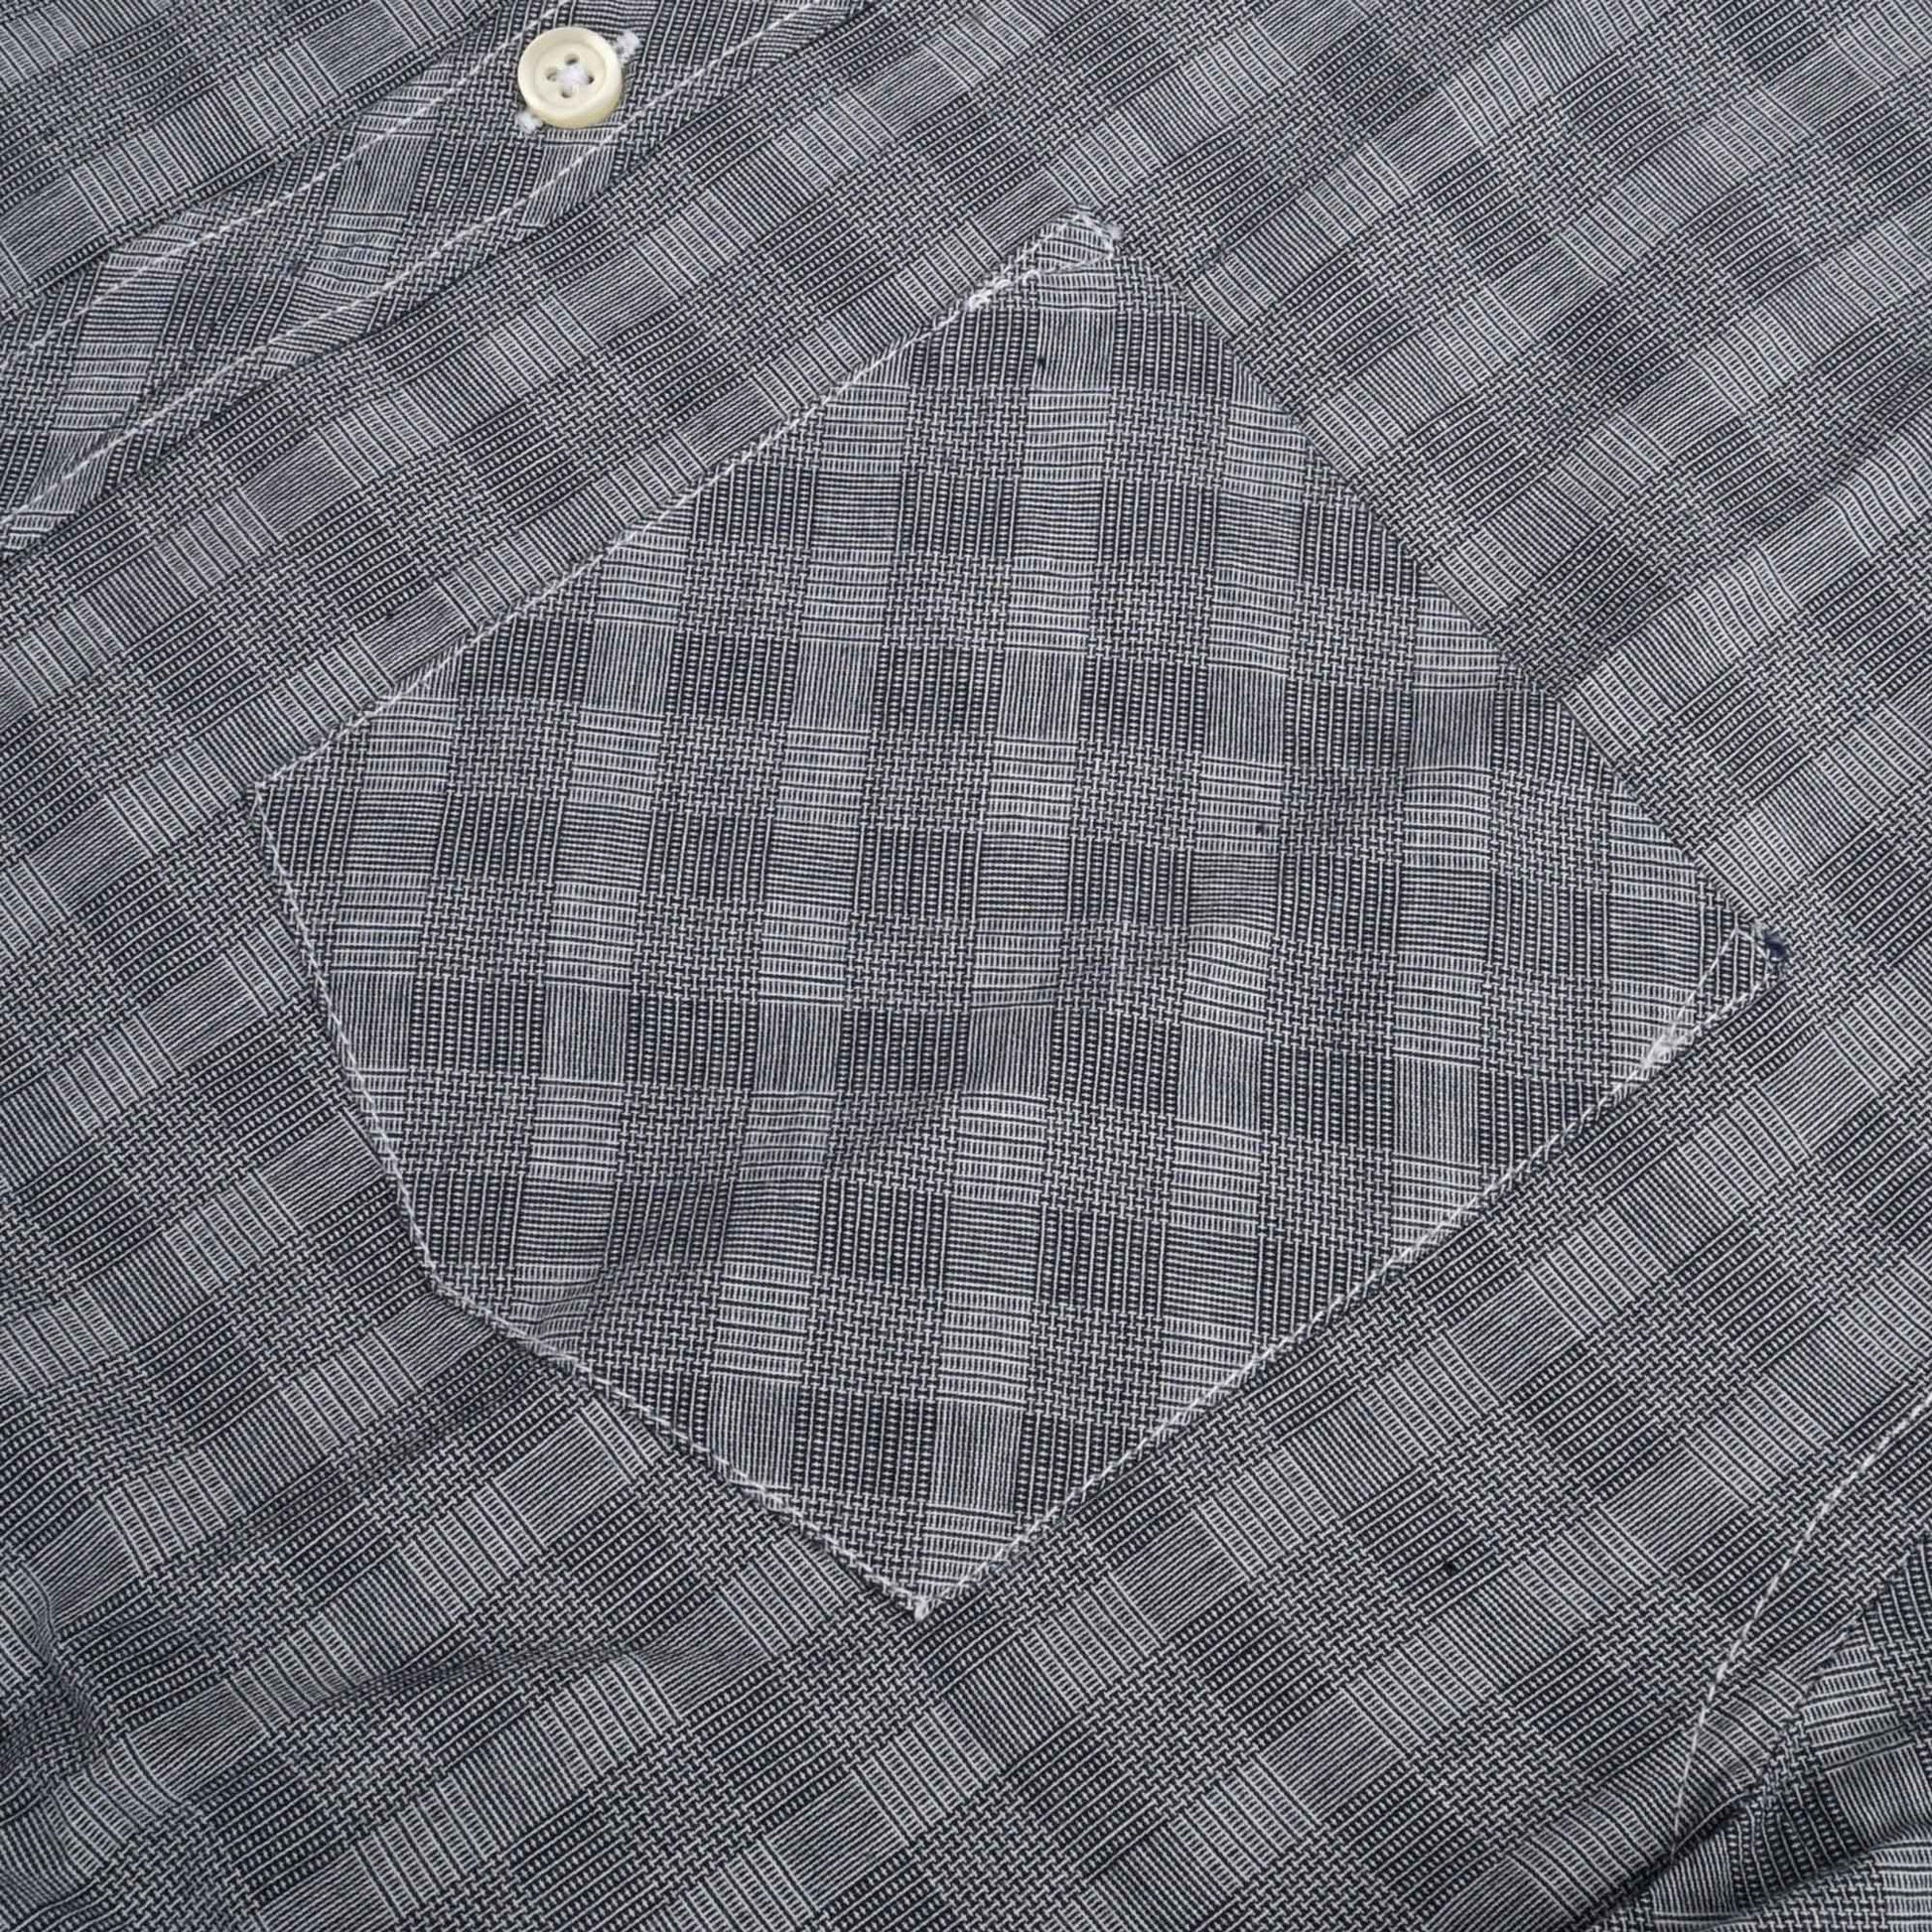 CP Men's Naarden Check Design Regular Fit Casual Shirt Men's Casual Shirt Minhas Garments 